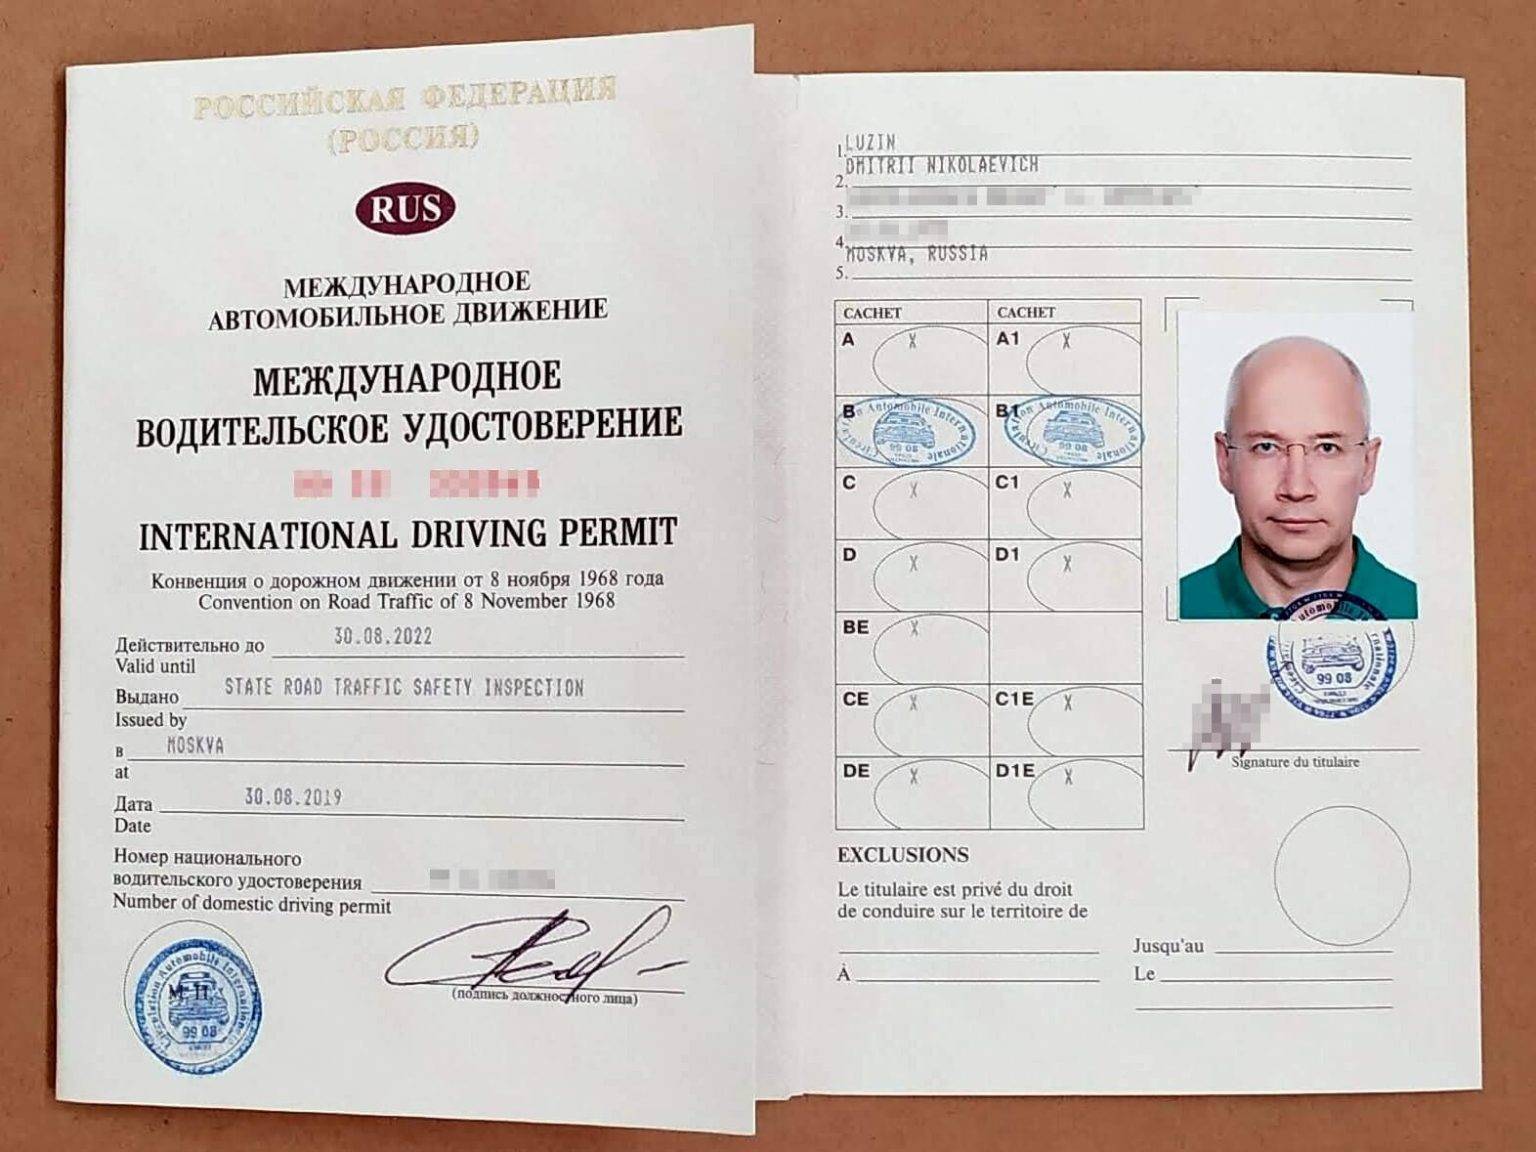 Получение мву – полезная информация для московских водителей